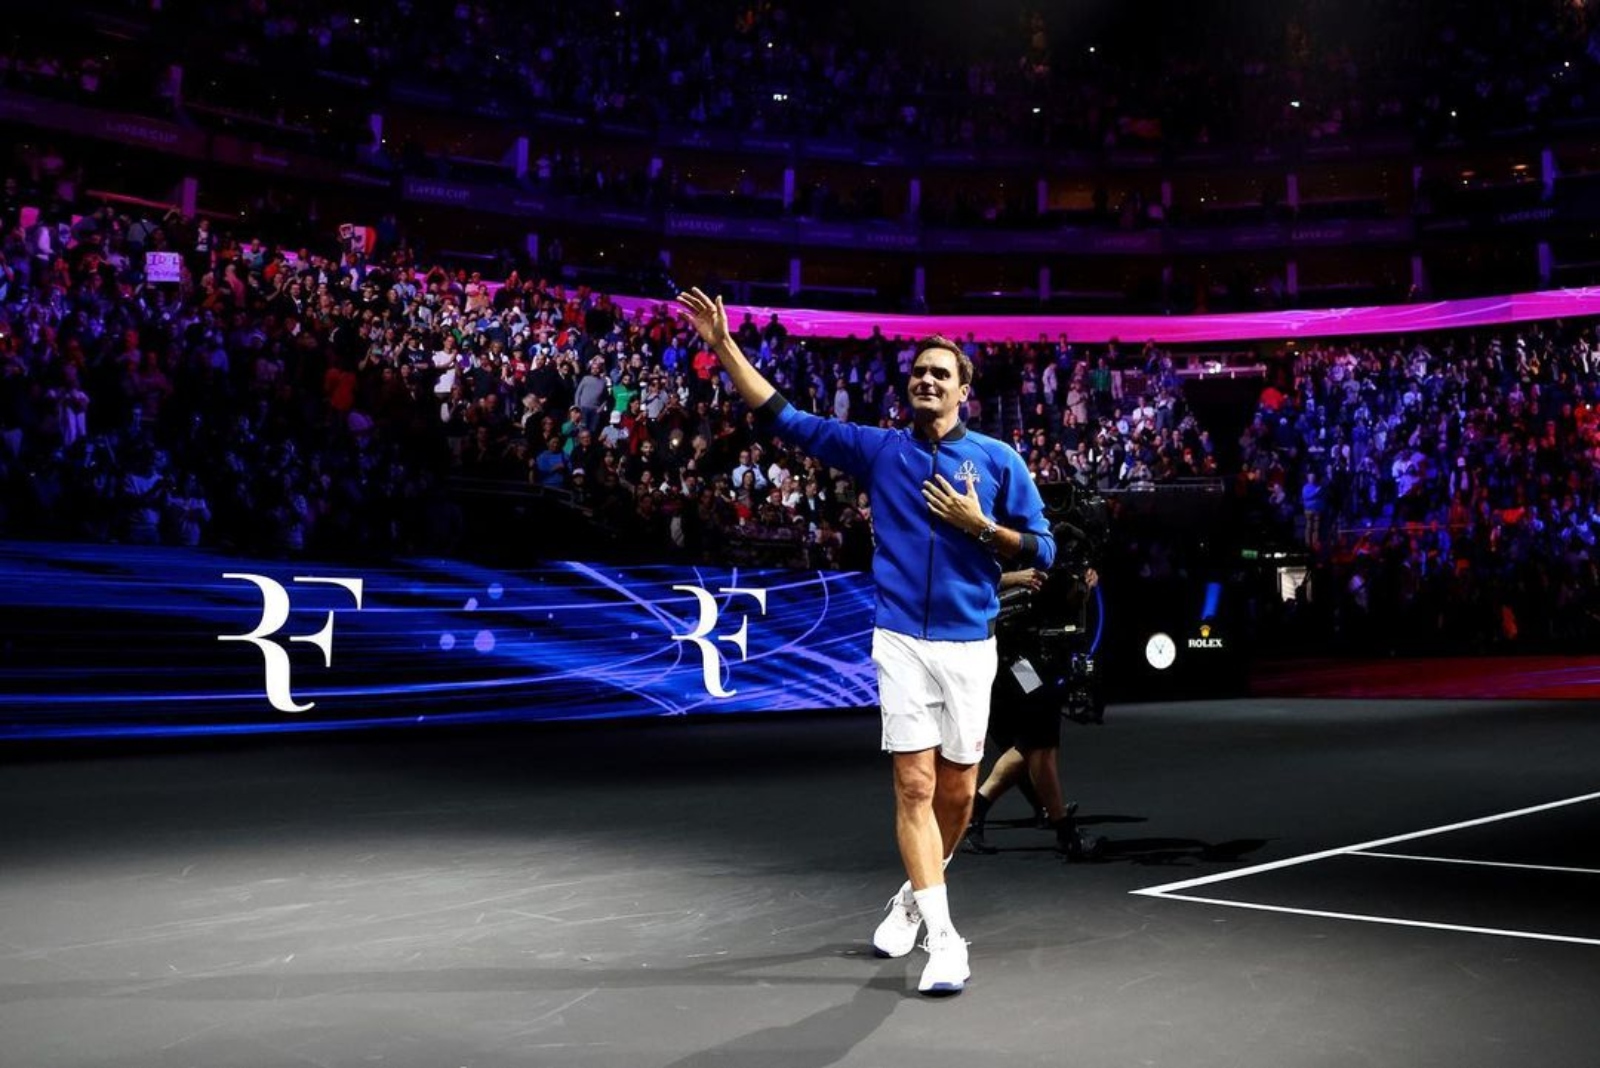 Roger Federer highest earning tennis player of all time